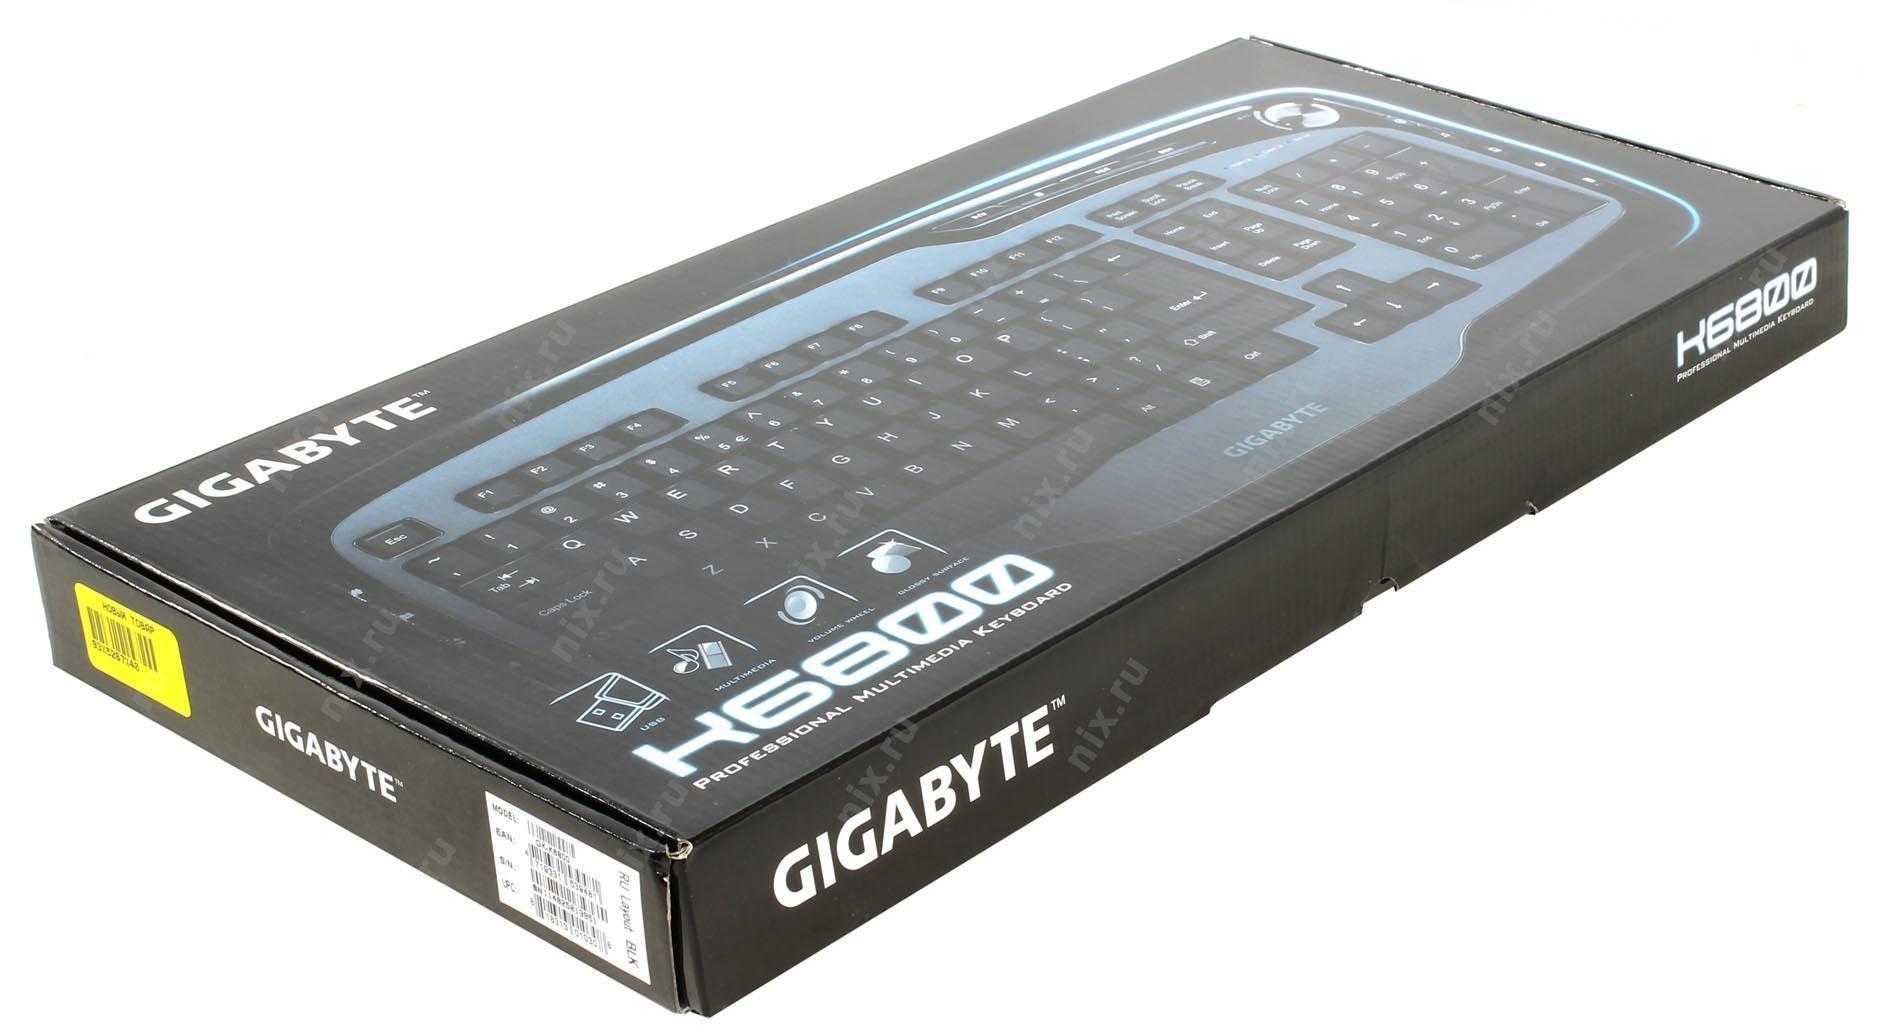 Gigabyte gk-k6800 black usb